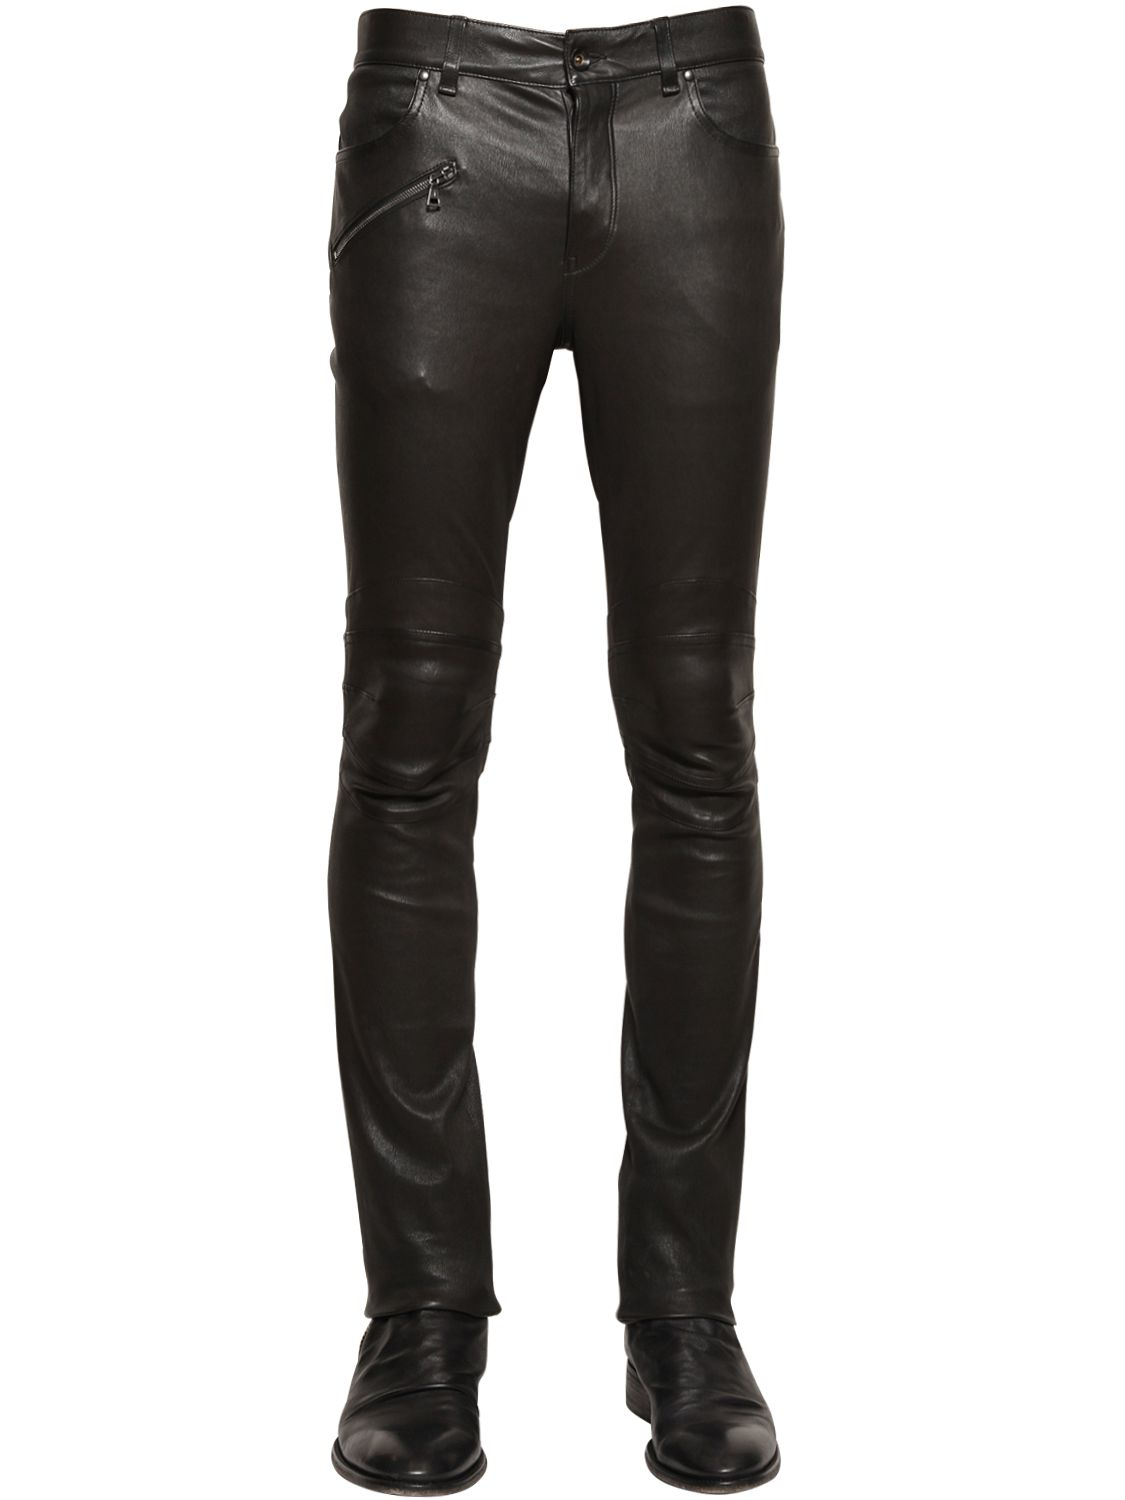 Lyst - John Varvatos Stretch Nappa Leather Biker Pants in Black for Men